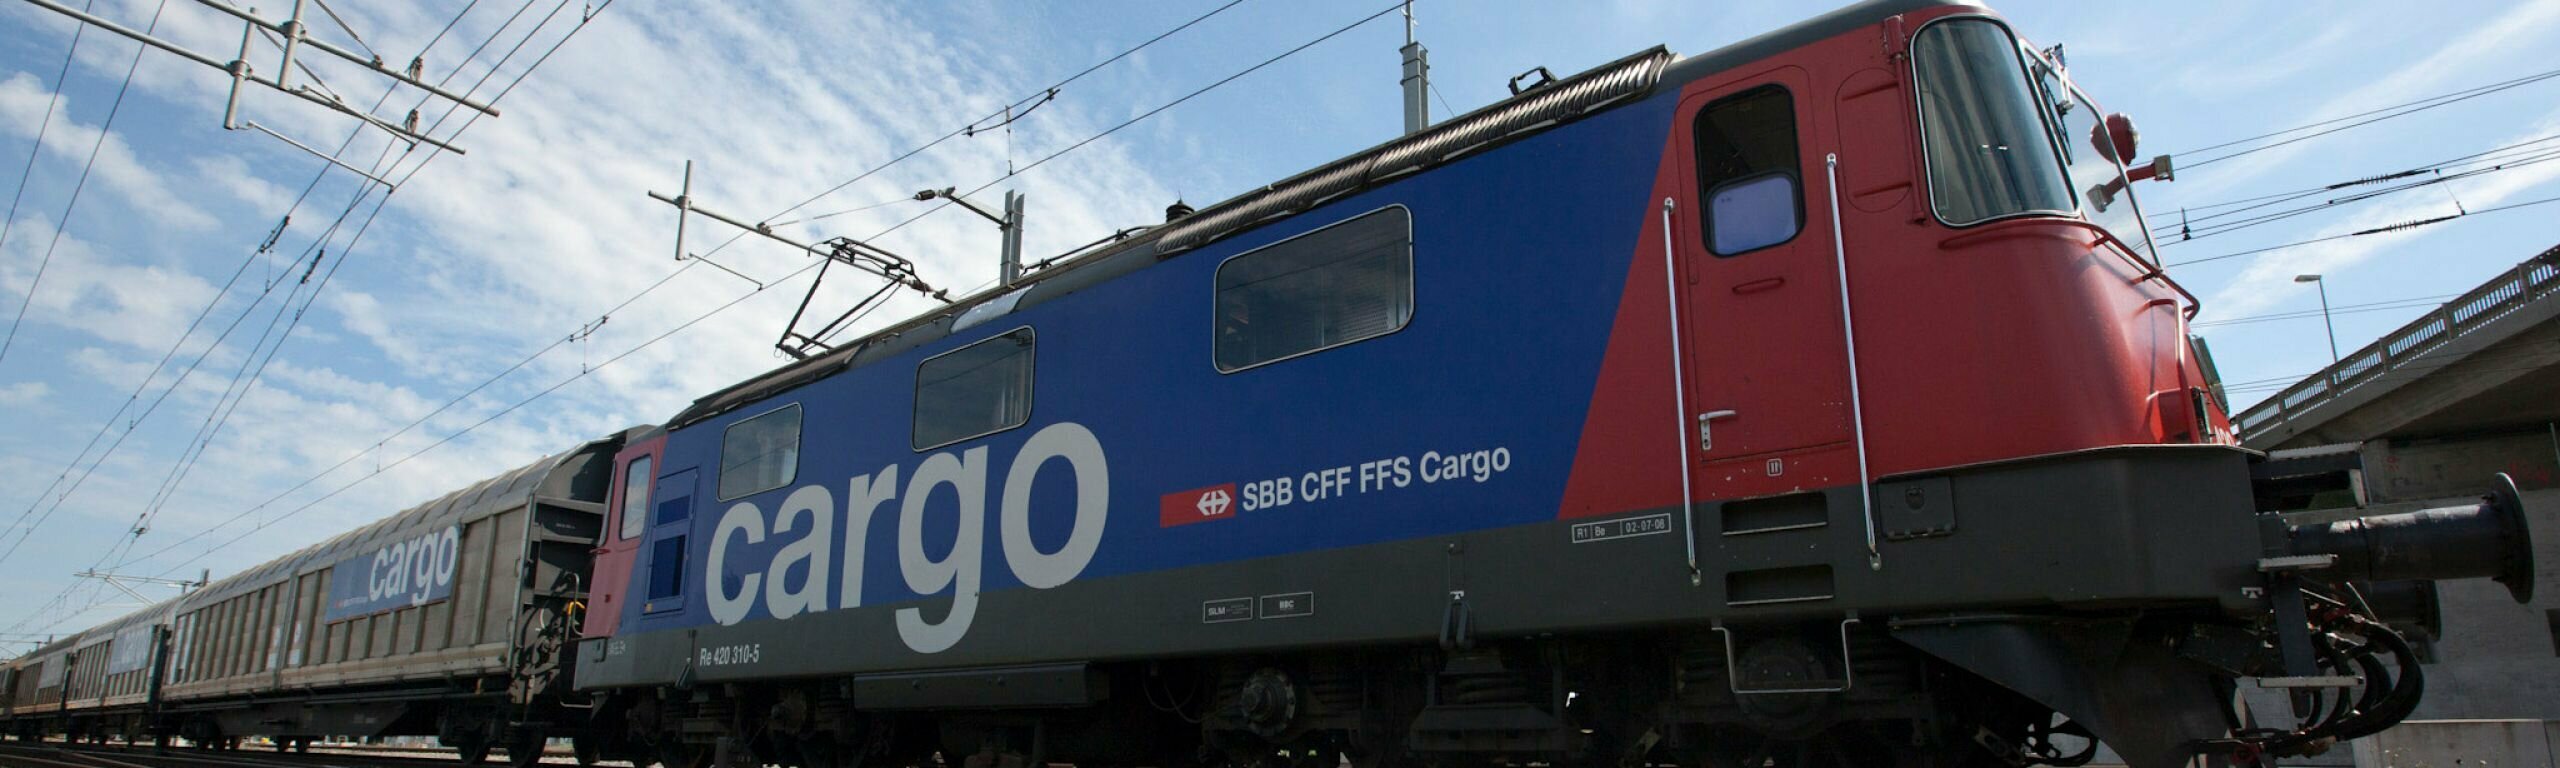 Ricerca di partner per FFS Cargo: le principali domande e risposte